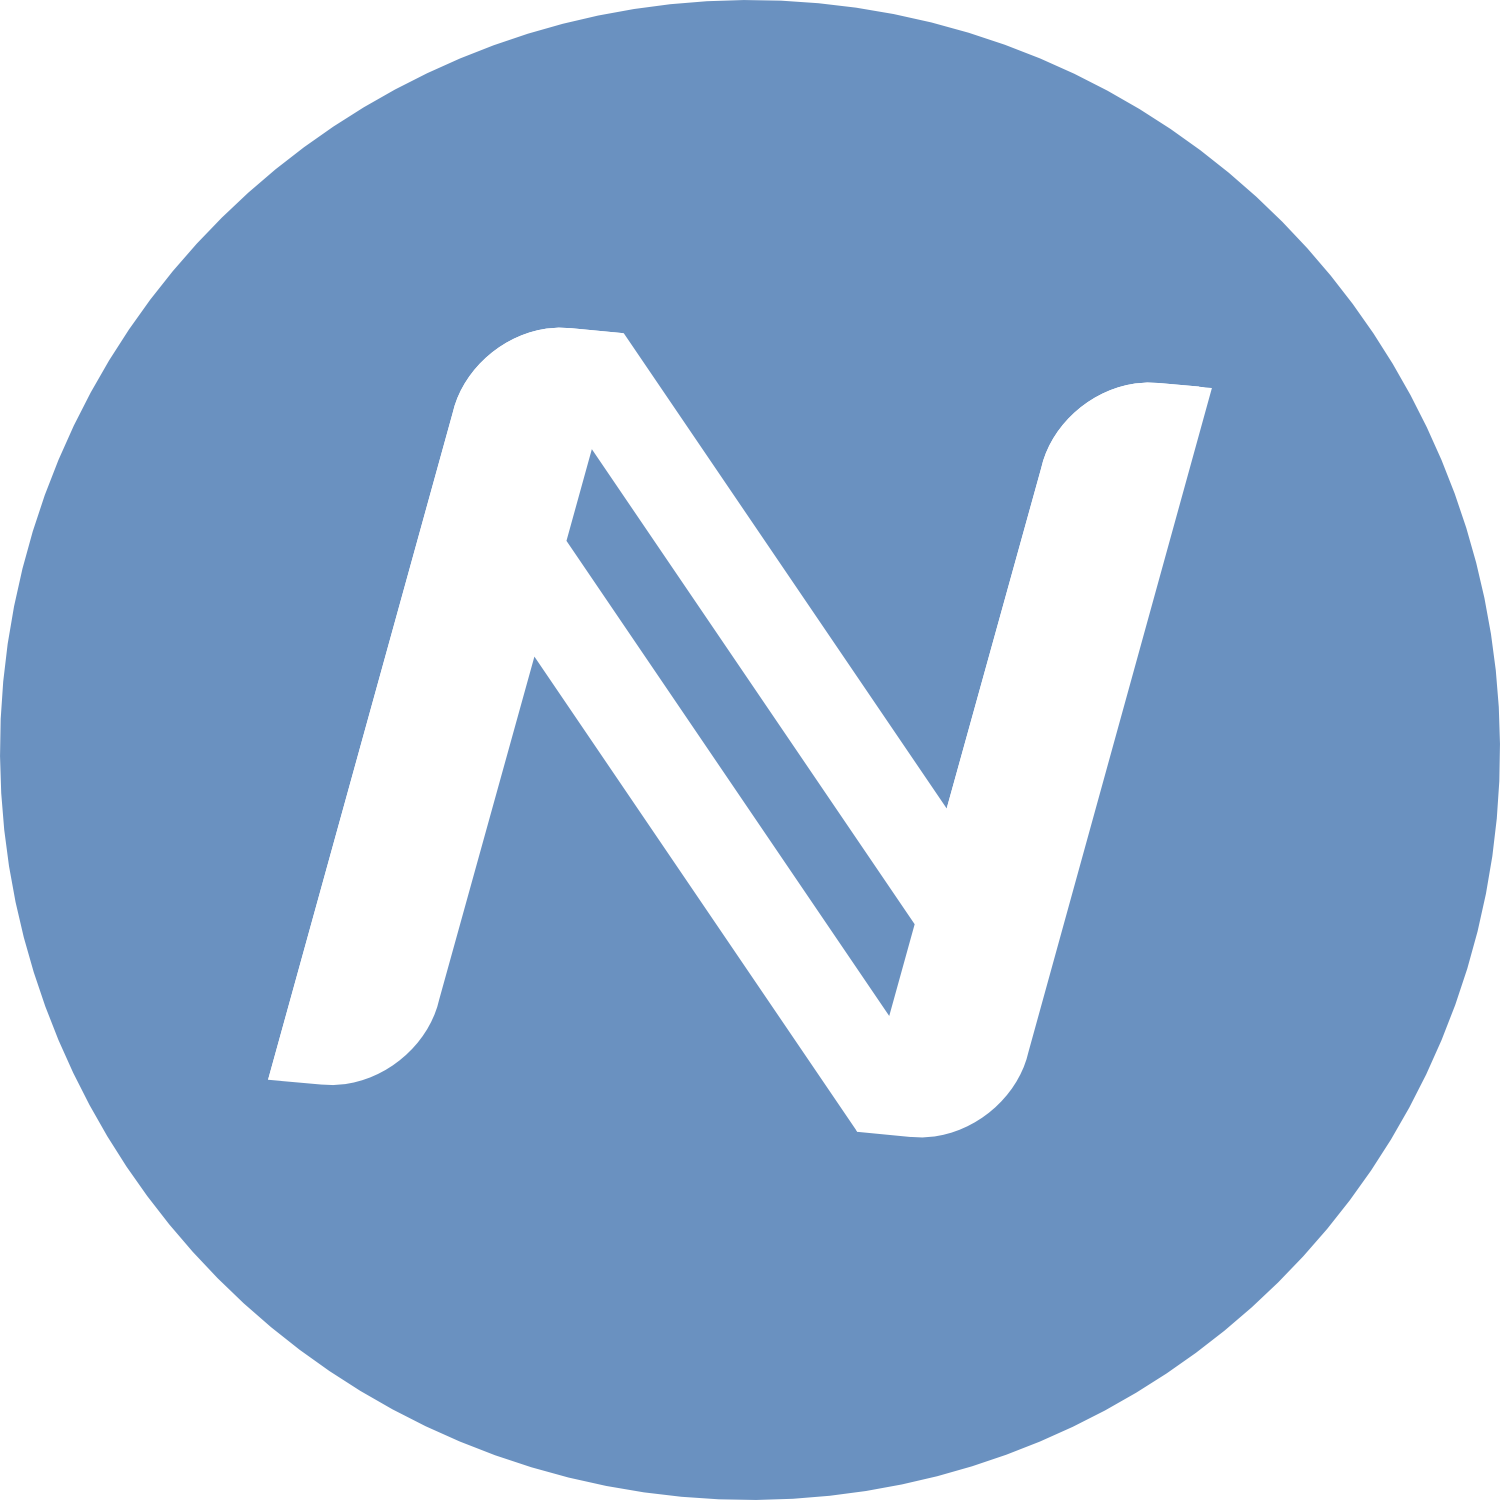 namecoin logo